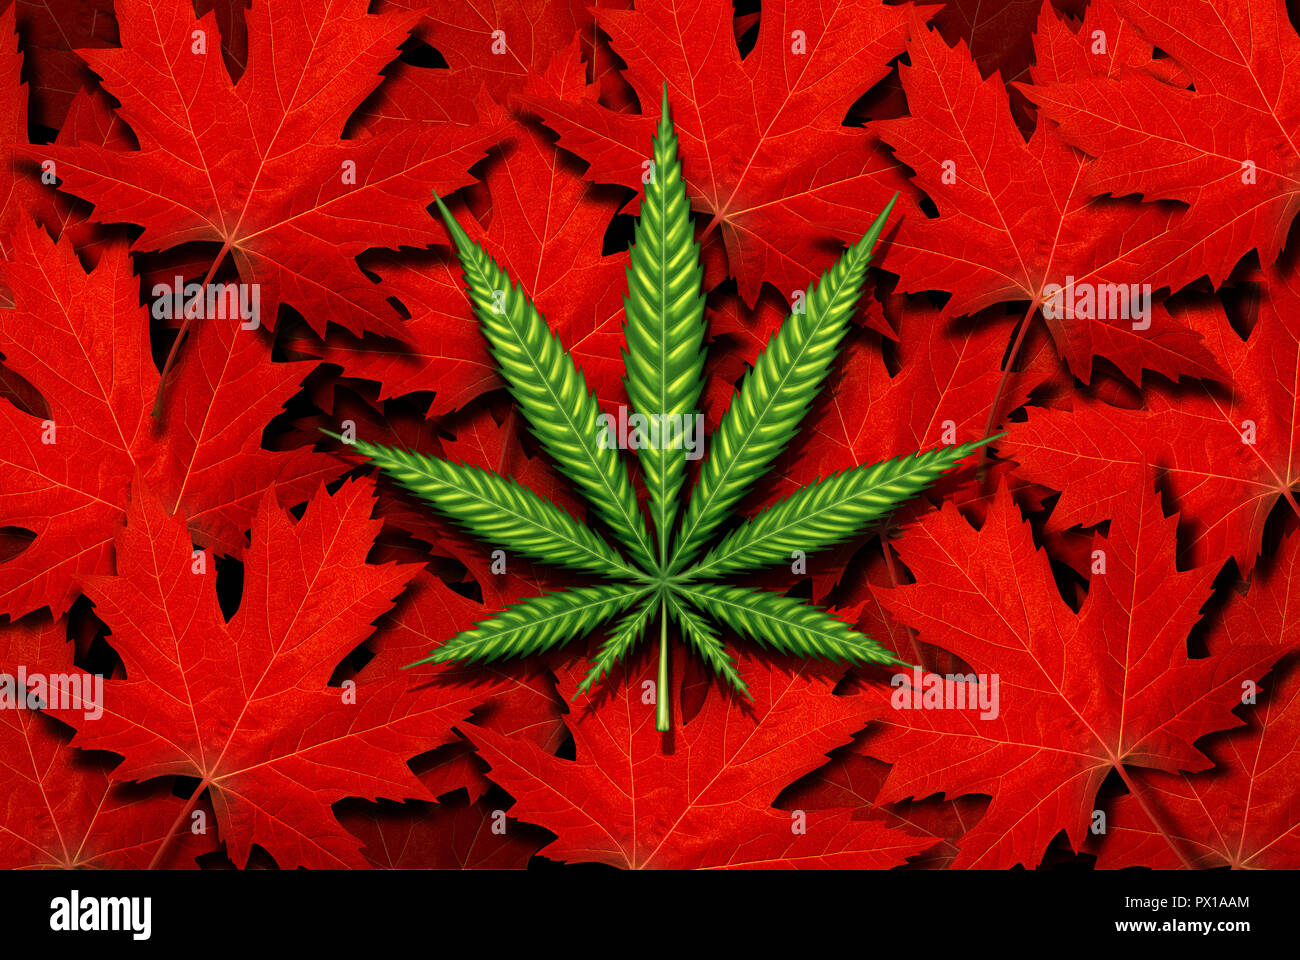 Canada et de cannabis marijuana canadienne concept et le droit et la législation en tant que problème social et médical loisirs de l'icône d'utilisation de mauvaises herbes comme un pot vert. Banque D'Images